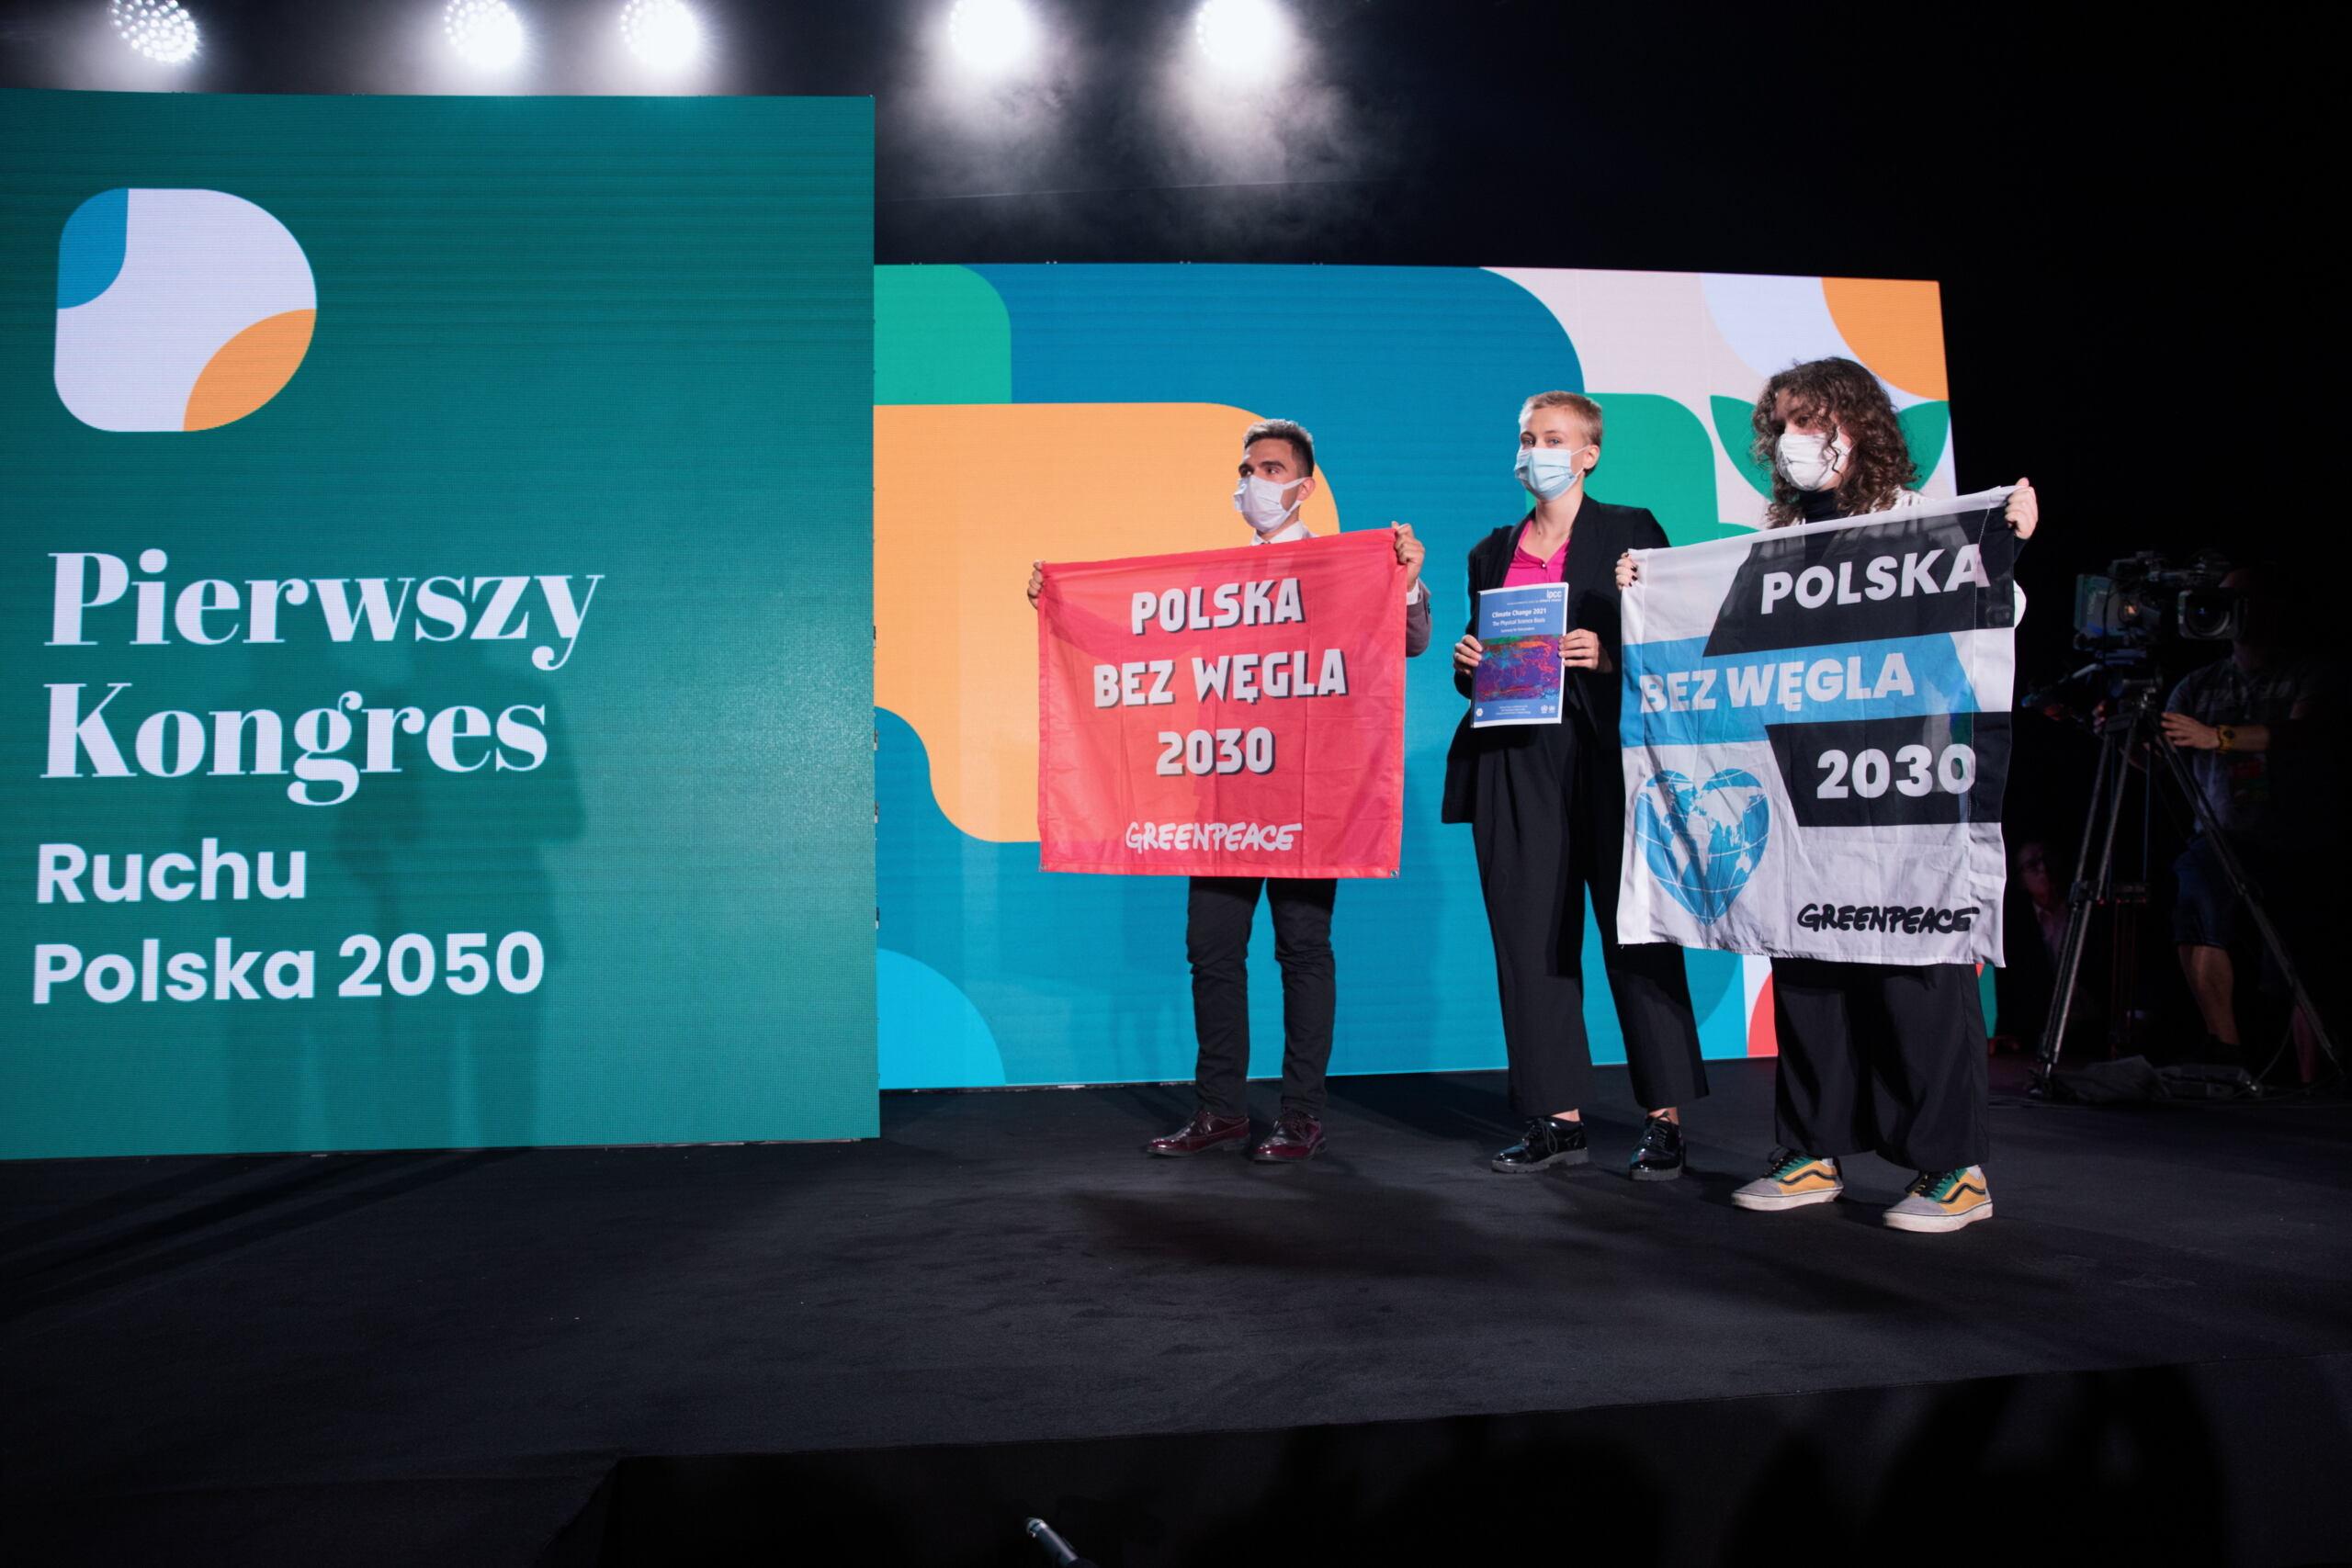 aktywiści Greenpeace trzymają tablicę z postulatami odejścia od węgla do 2030 roku na scenie kongresu ruchu Polska 2050